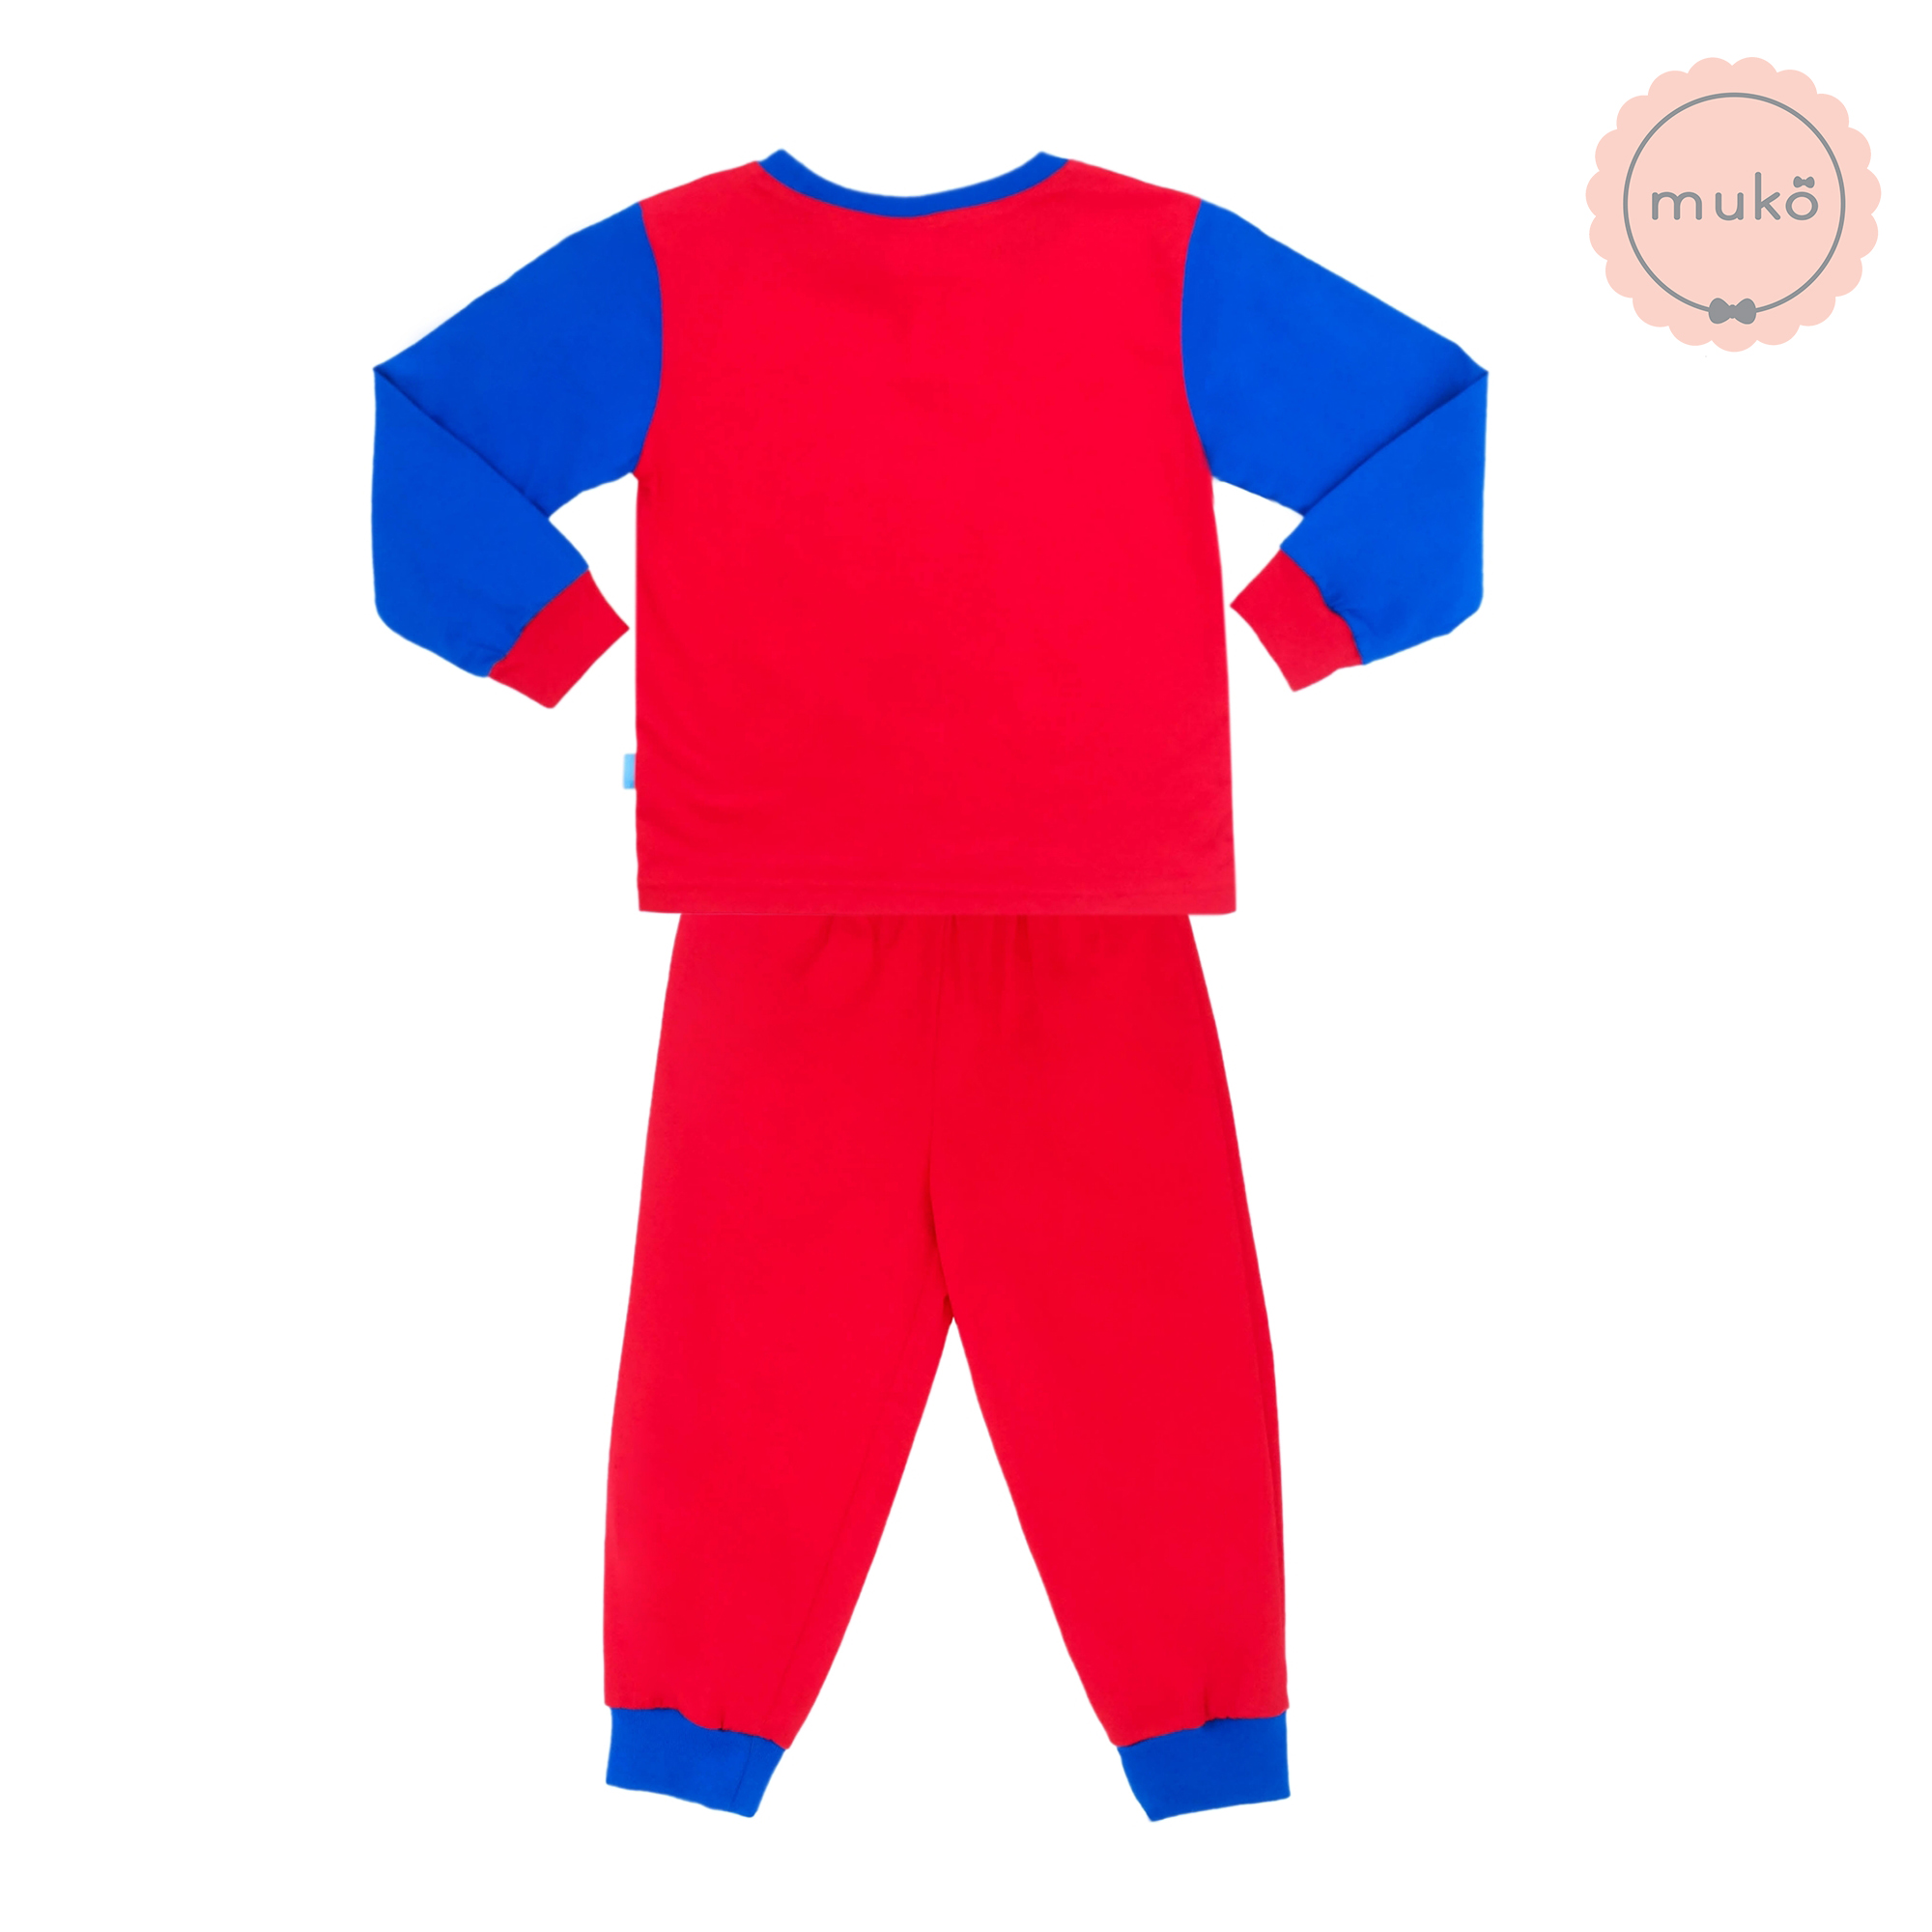 ชุดเด็ก 2-3 ขวบ แขนยาว-ขายาว (Size 3) DLS127-691-3-Red 3 ลาย สติช Stitch สีแดง (แขนน้ำเงินเข้ม)